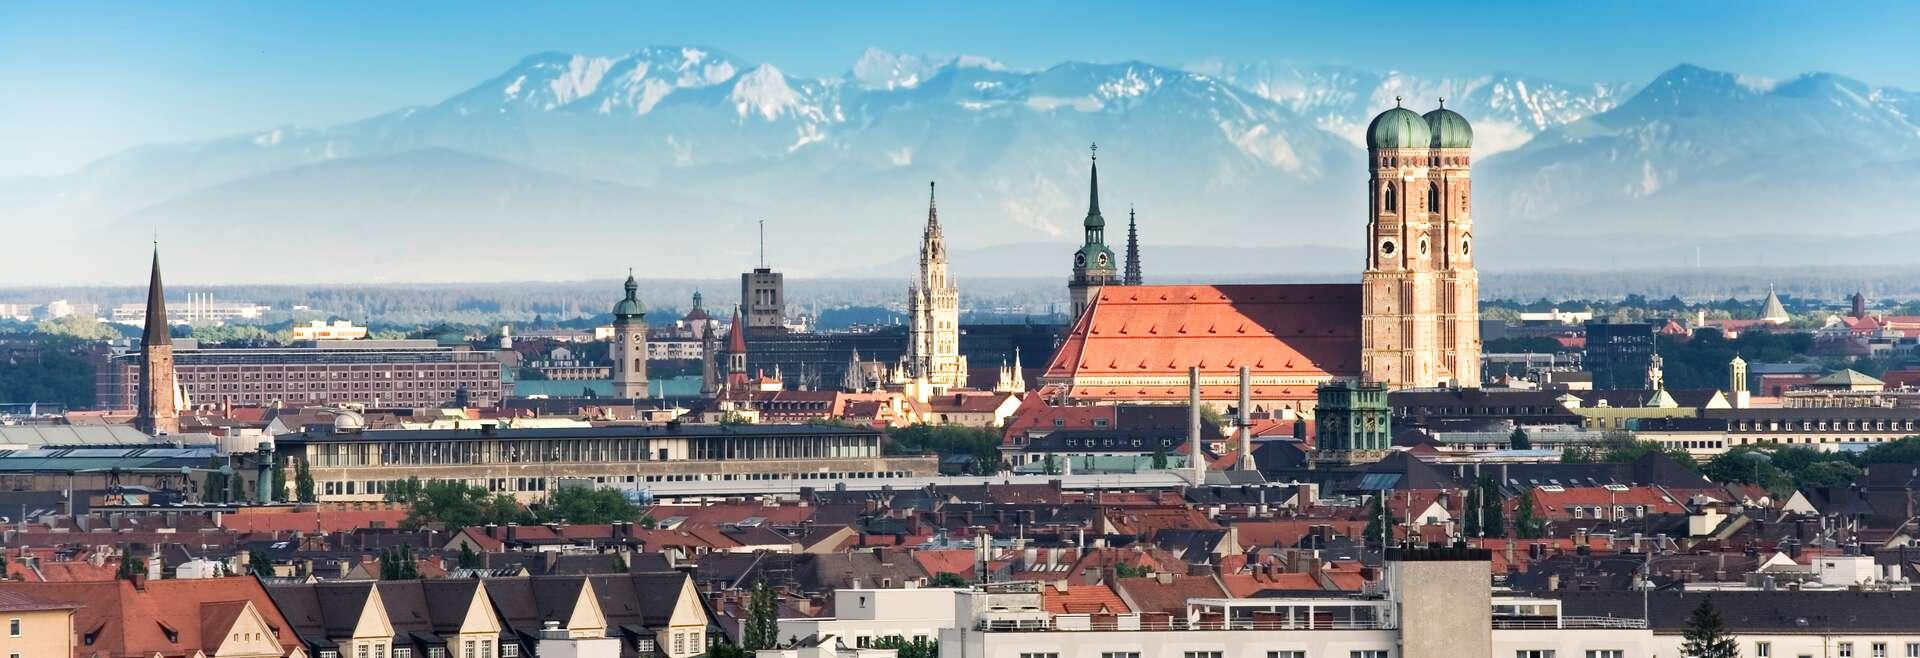 Séjour linguistique Allemand, Munich - panorama